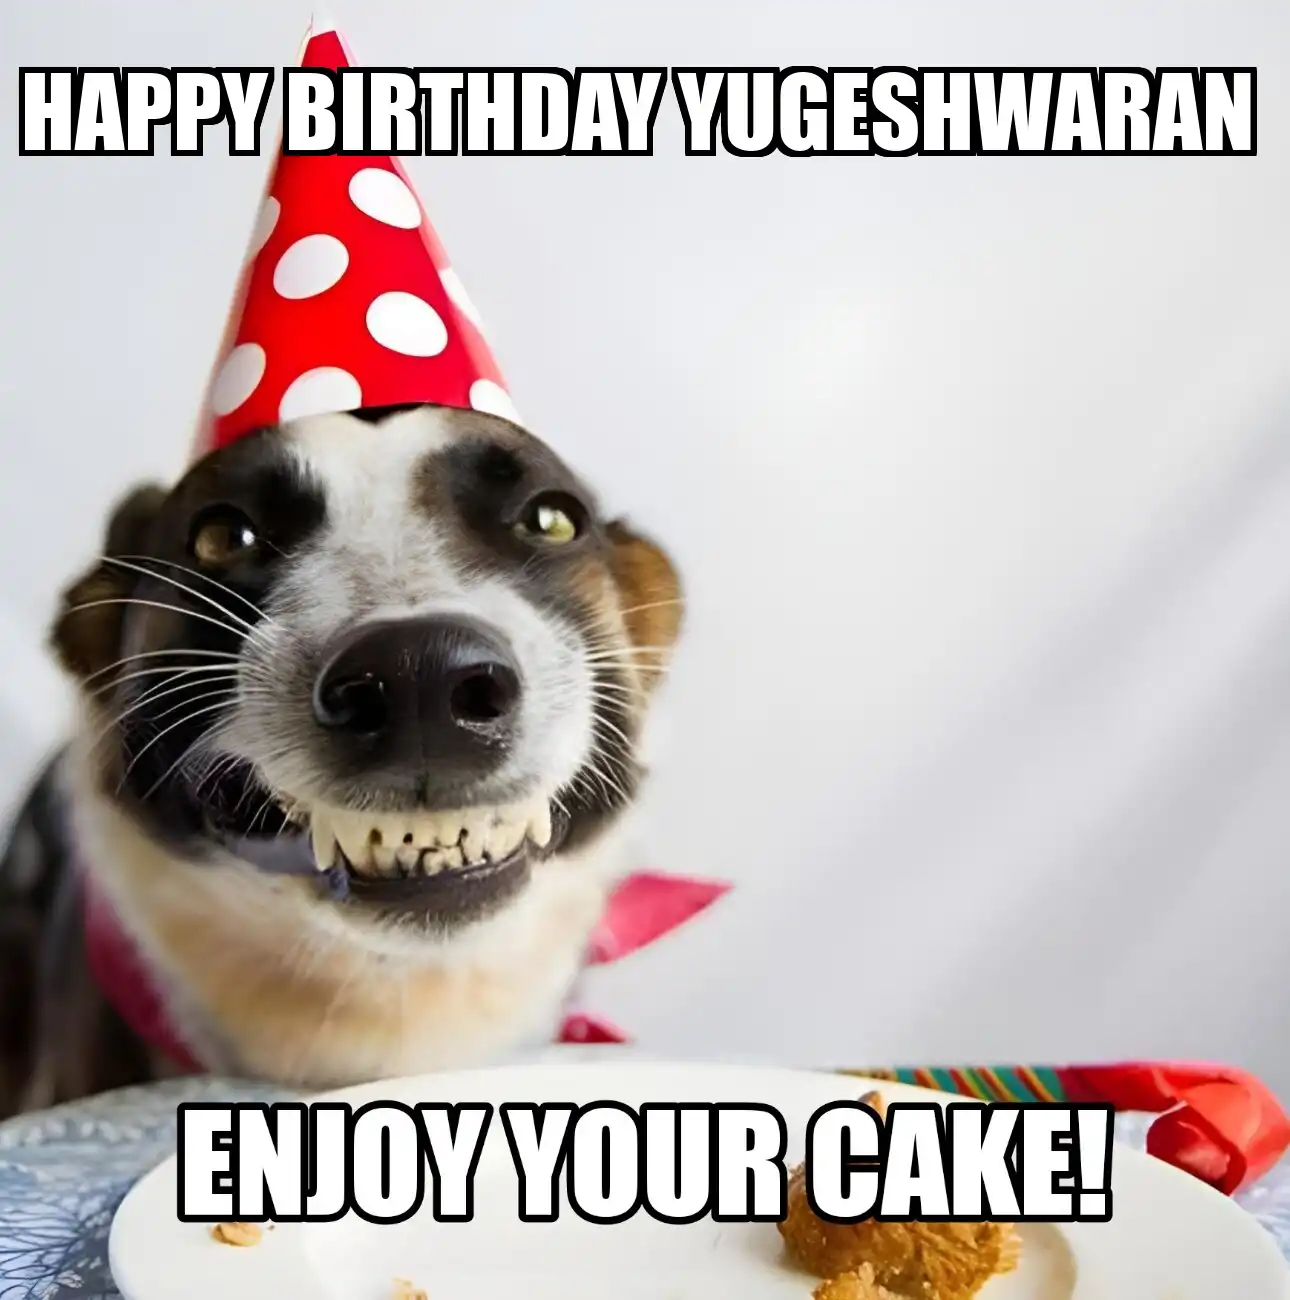 Happy Birthday Yugeshwaran Enjoy Your Cake Dog Meme